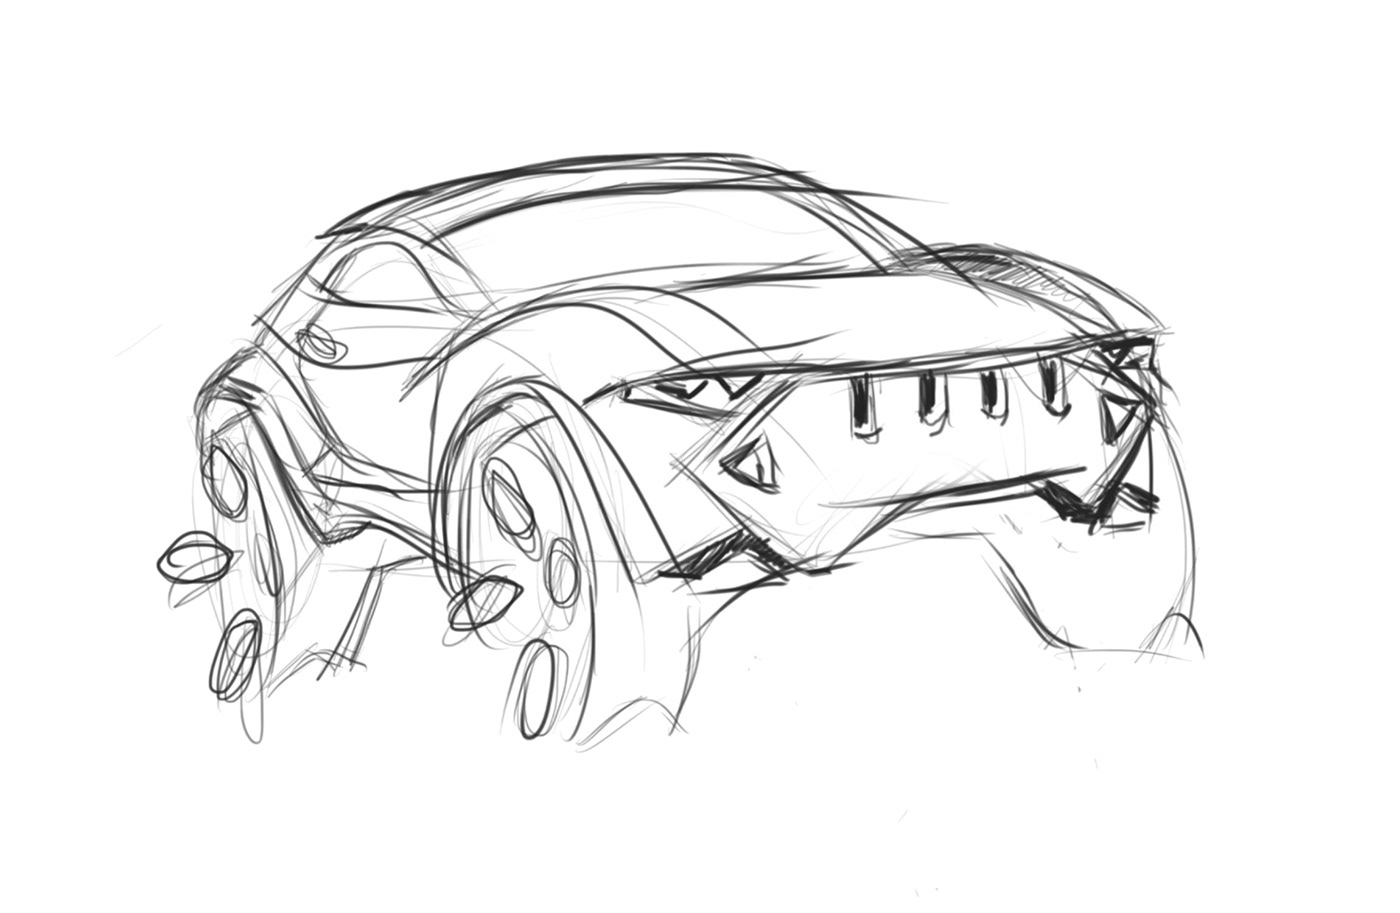 jeep cardesign automotivedesign suv automotive   CONCEPTCARS futuristic-design jeep-concept transportation'design vehicle'design